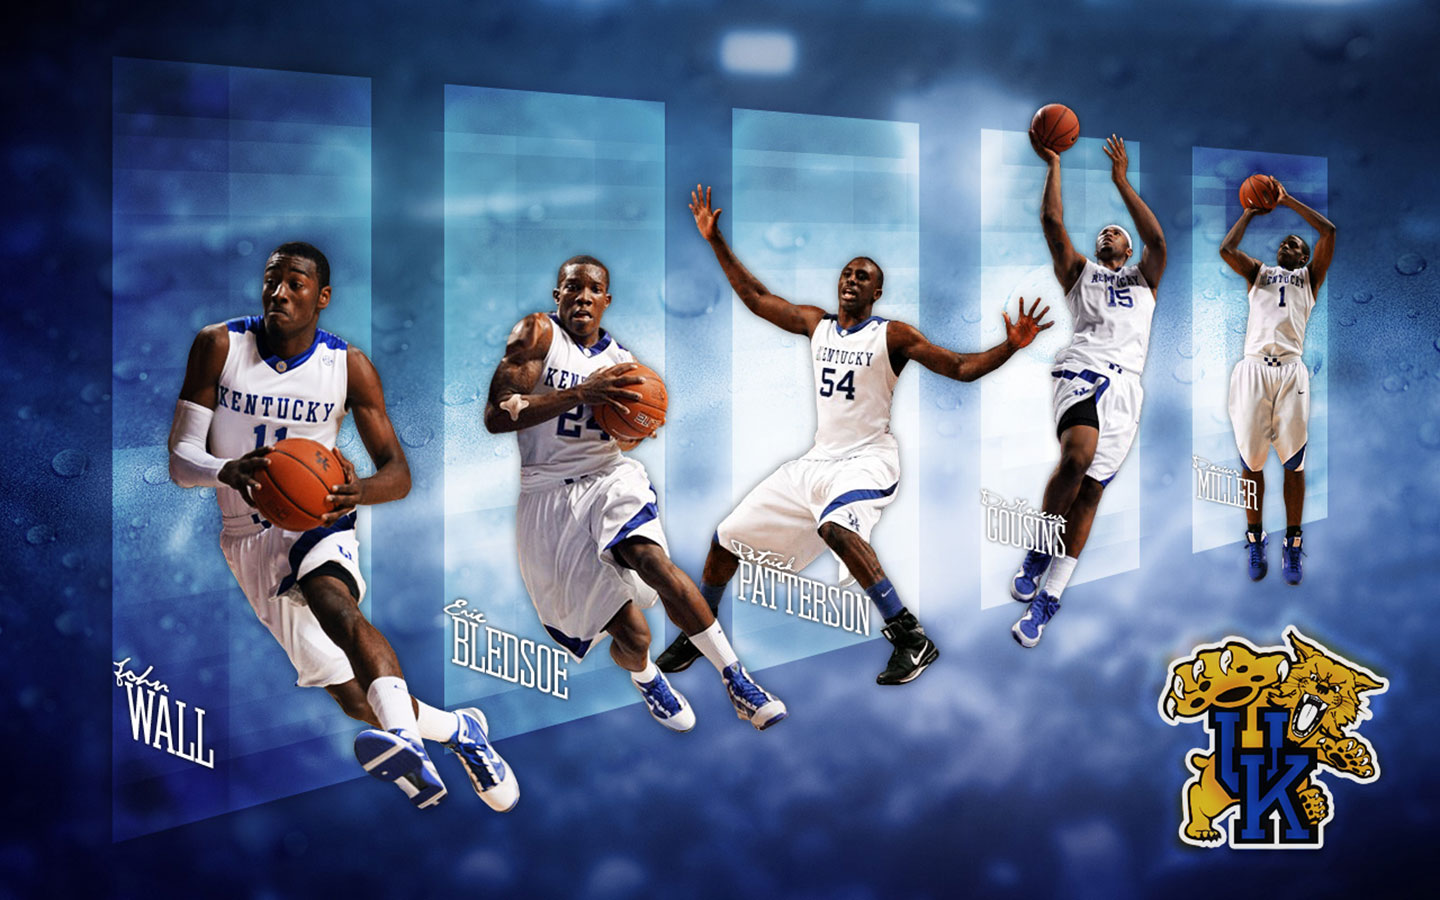 Kentucky Basketball Wallpaper 2019 - HD Wallpaper 